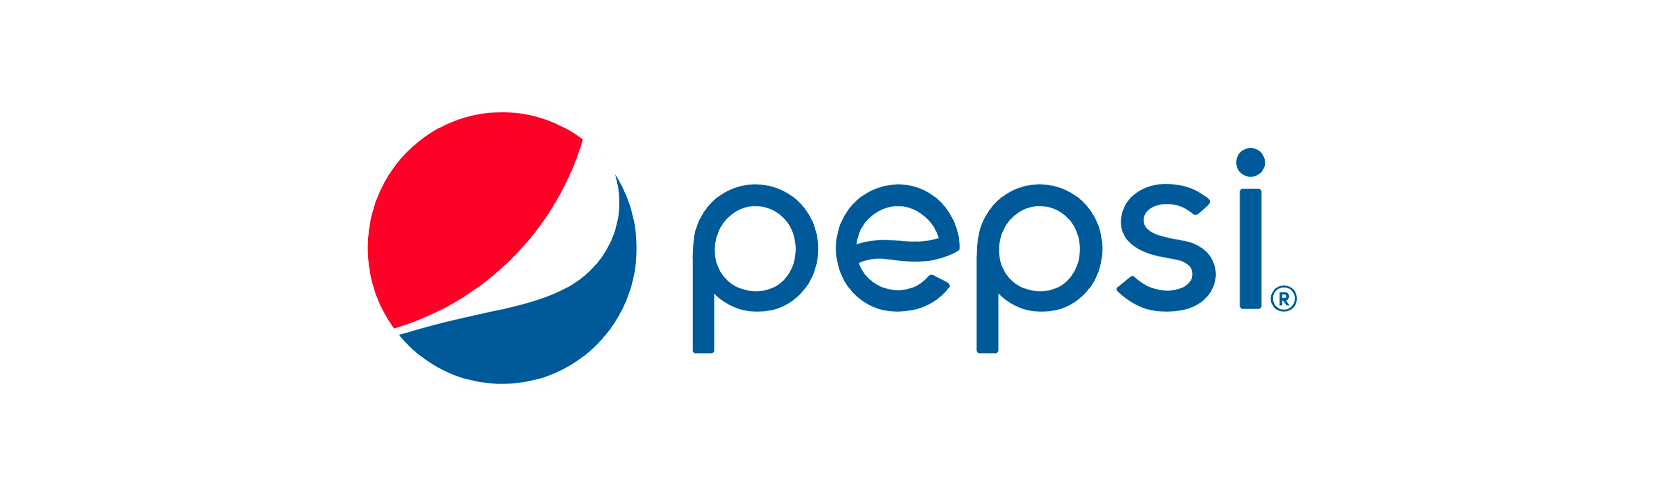 network_pepsi